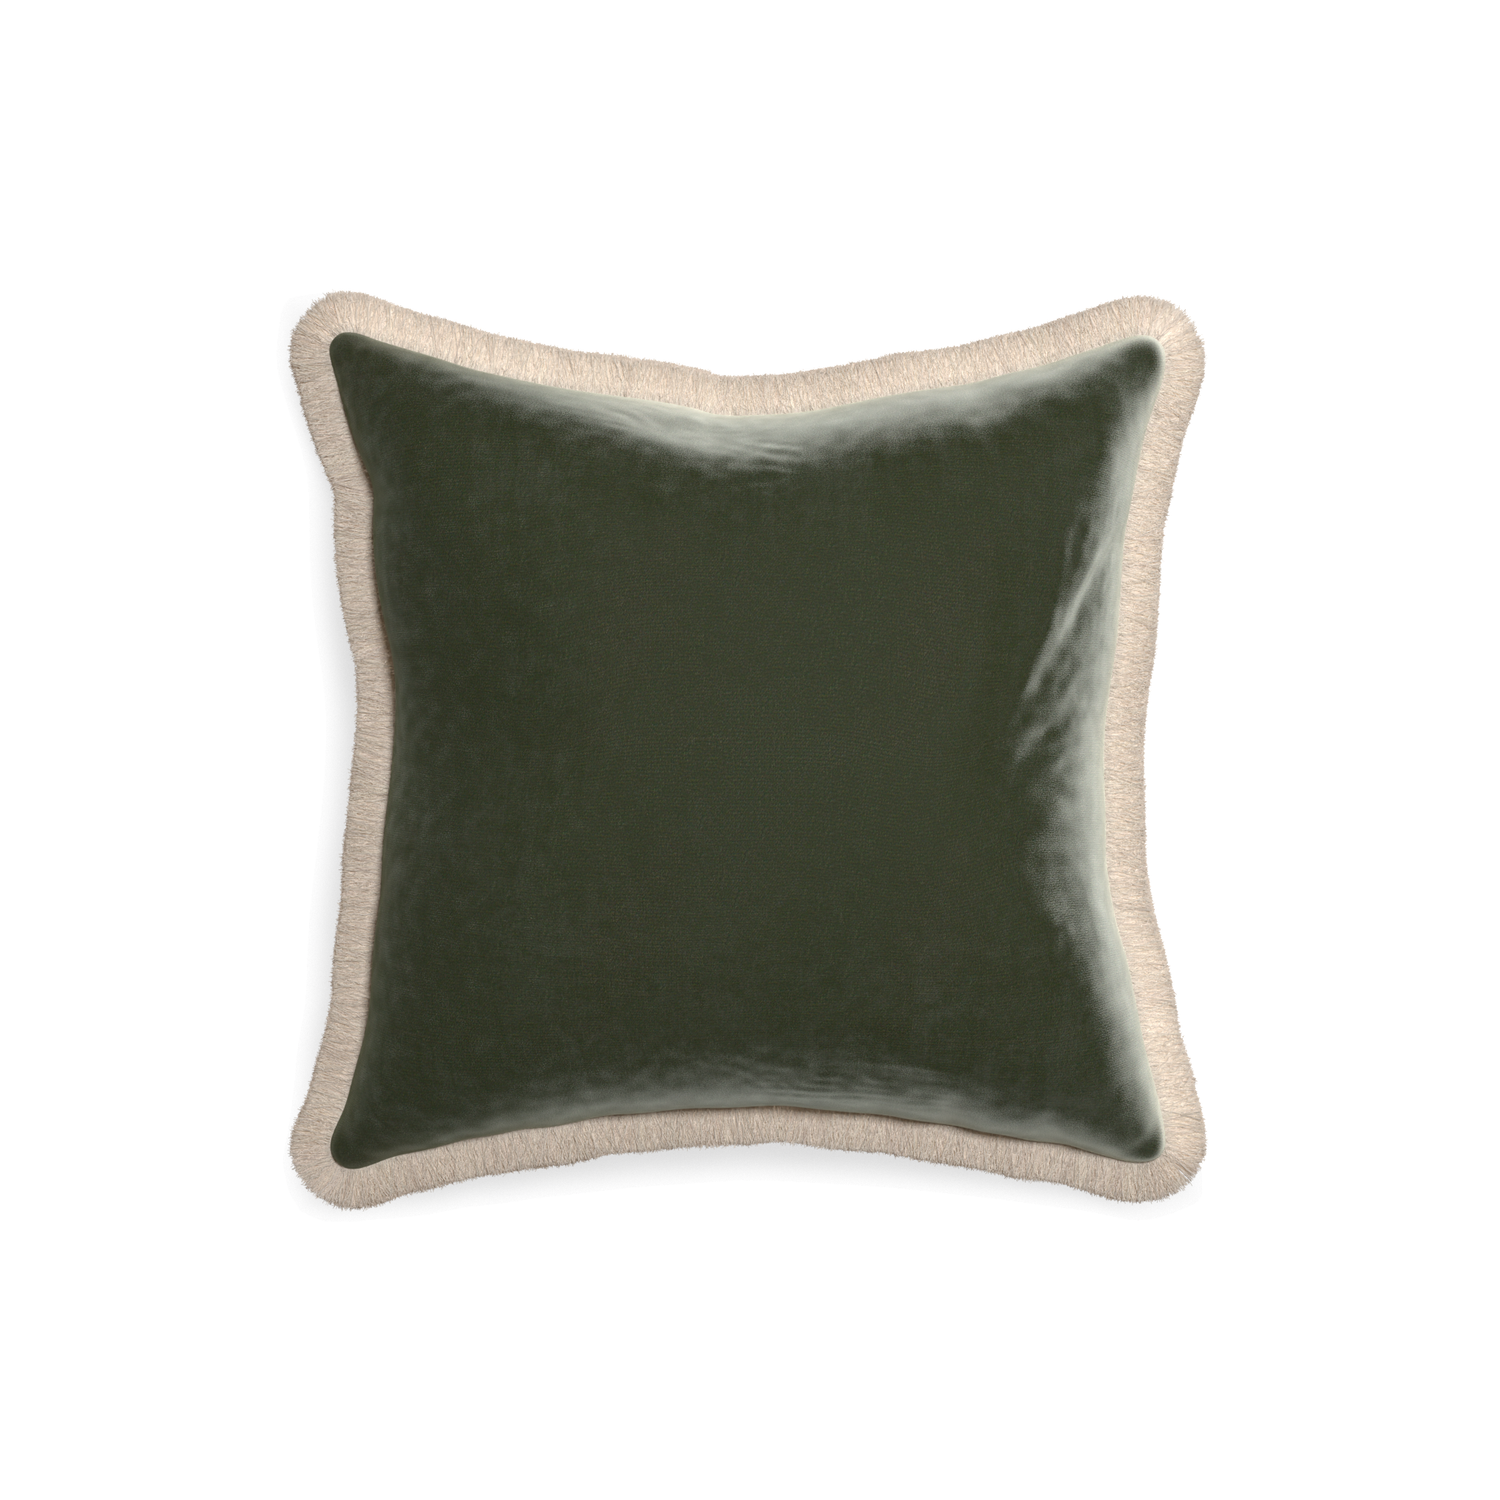 18-square fern velvet custom pillow with cream fringe on white background